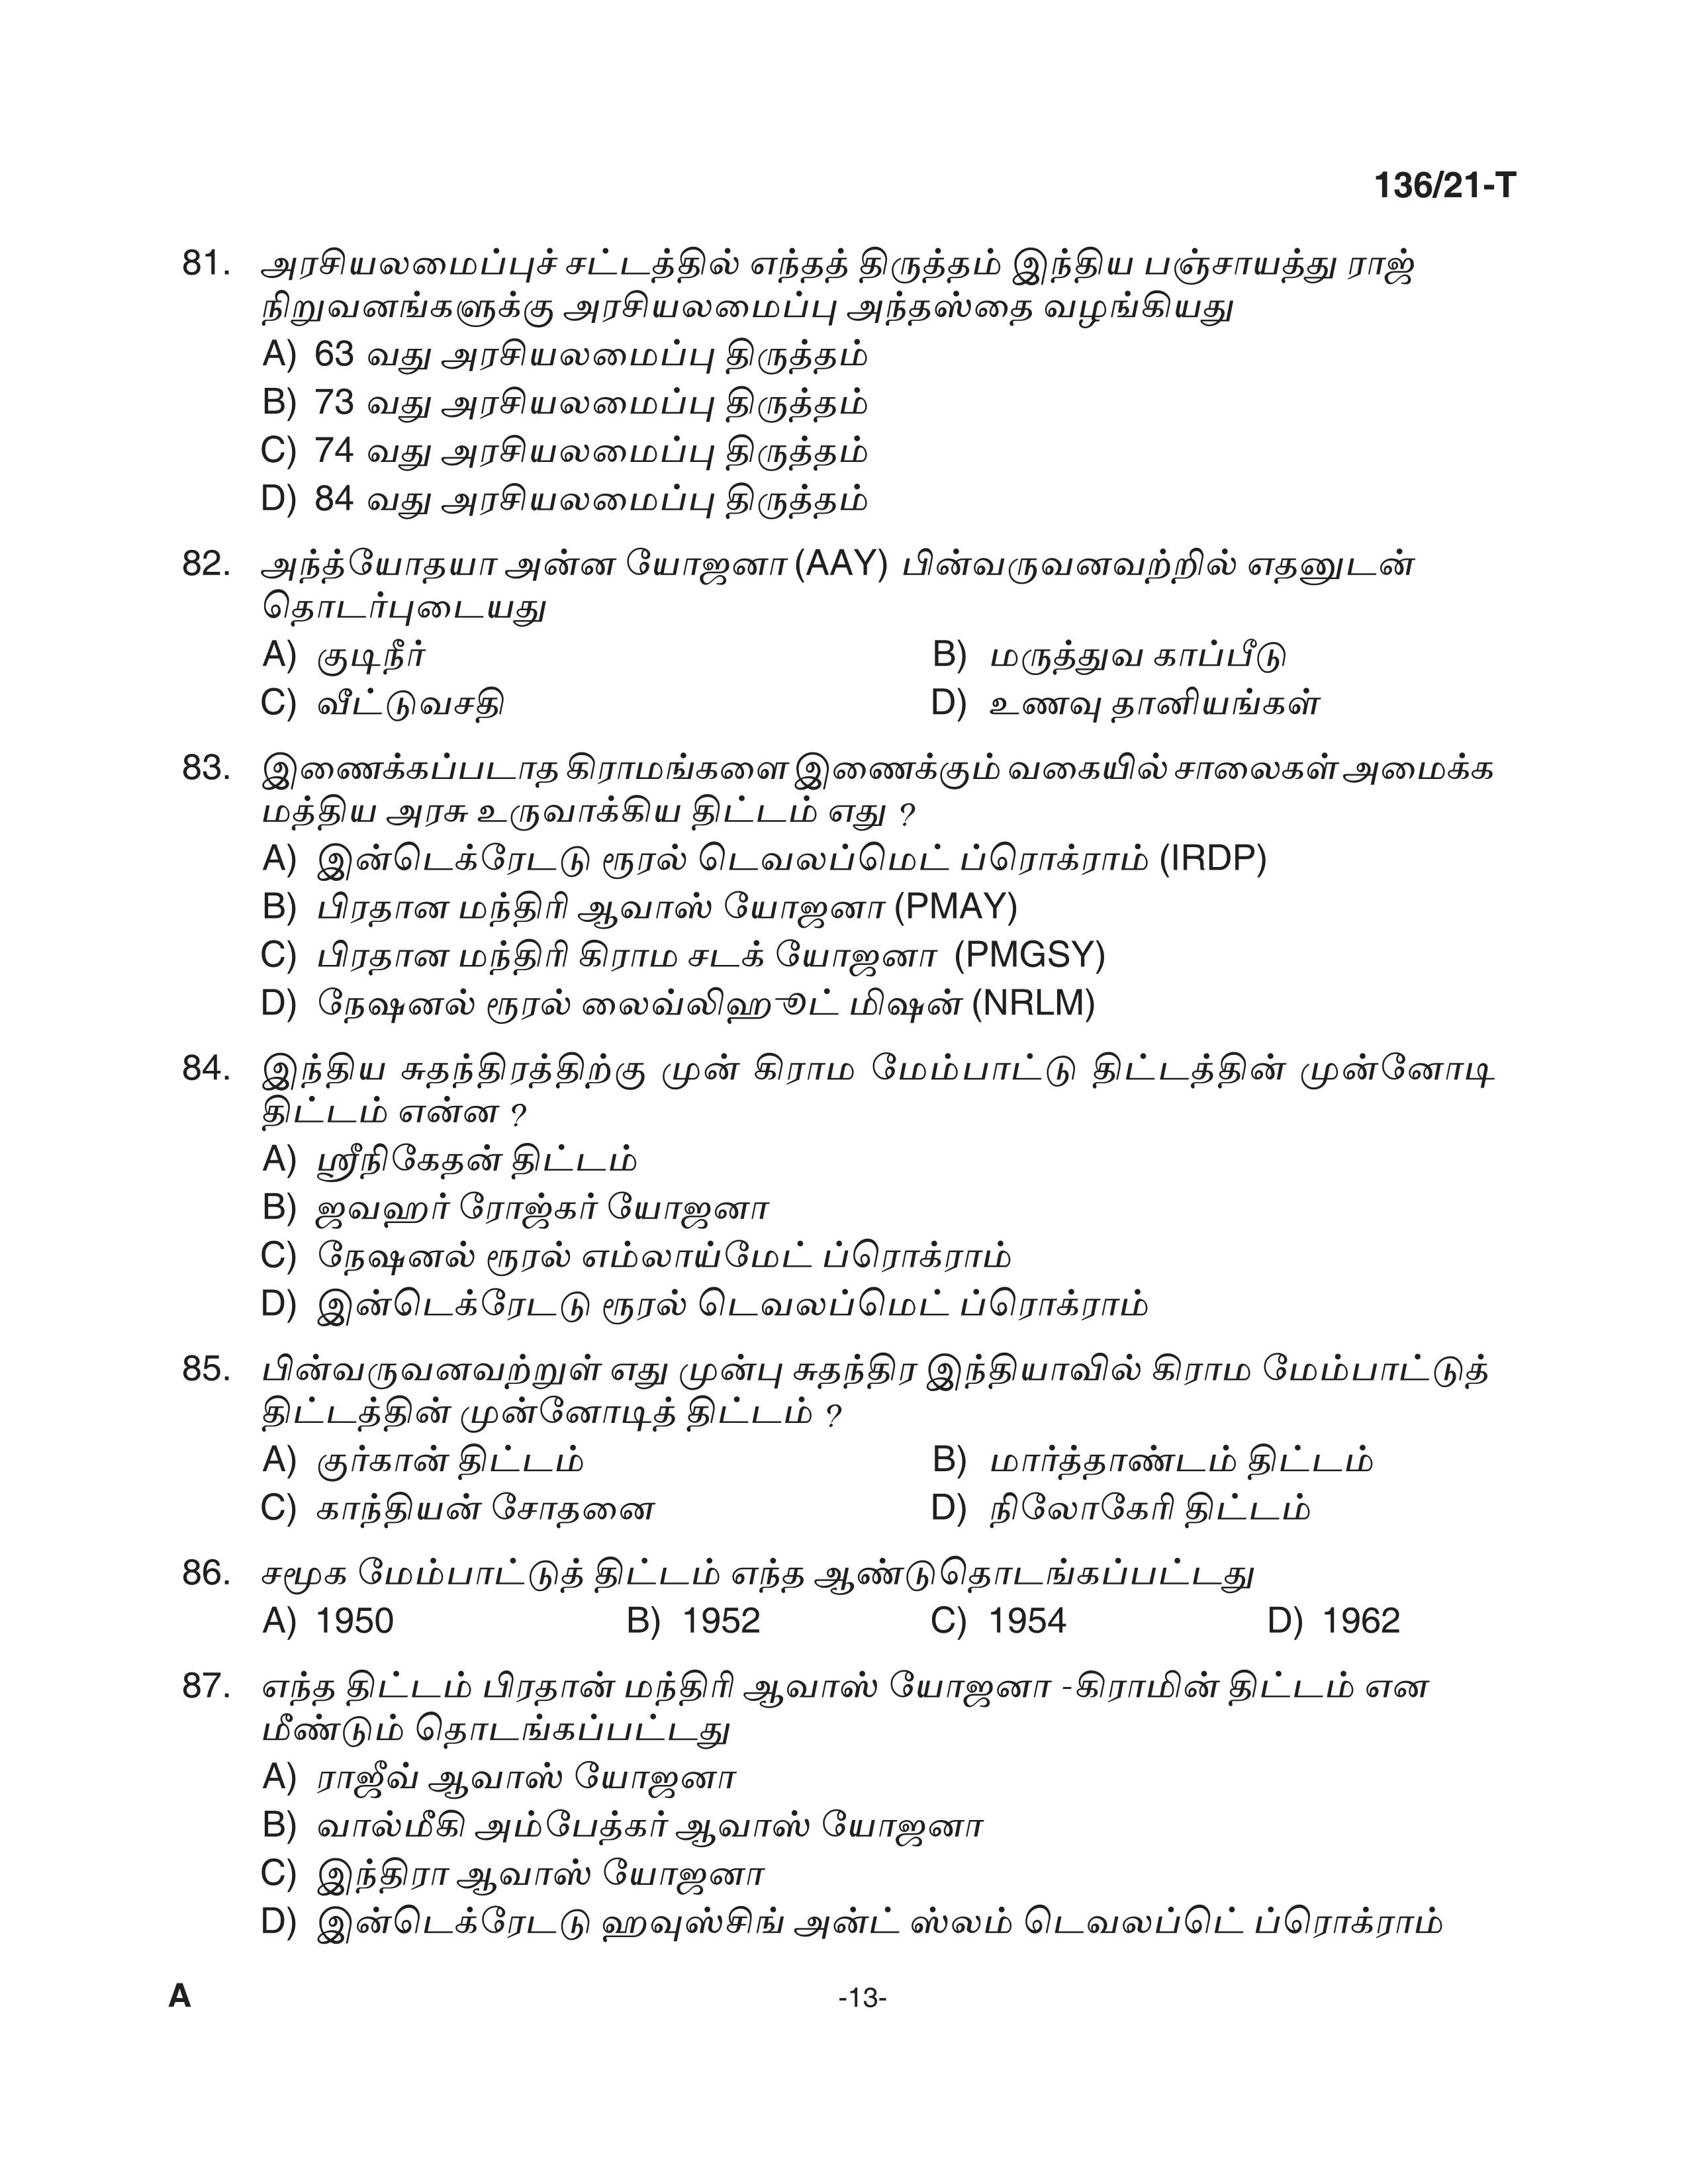 KPSC Village Extension Officer Tamil Exam 2021 Code 1362021 T 12